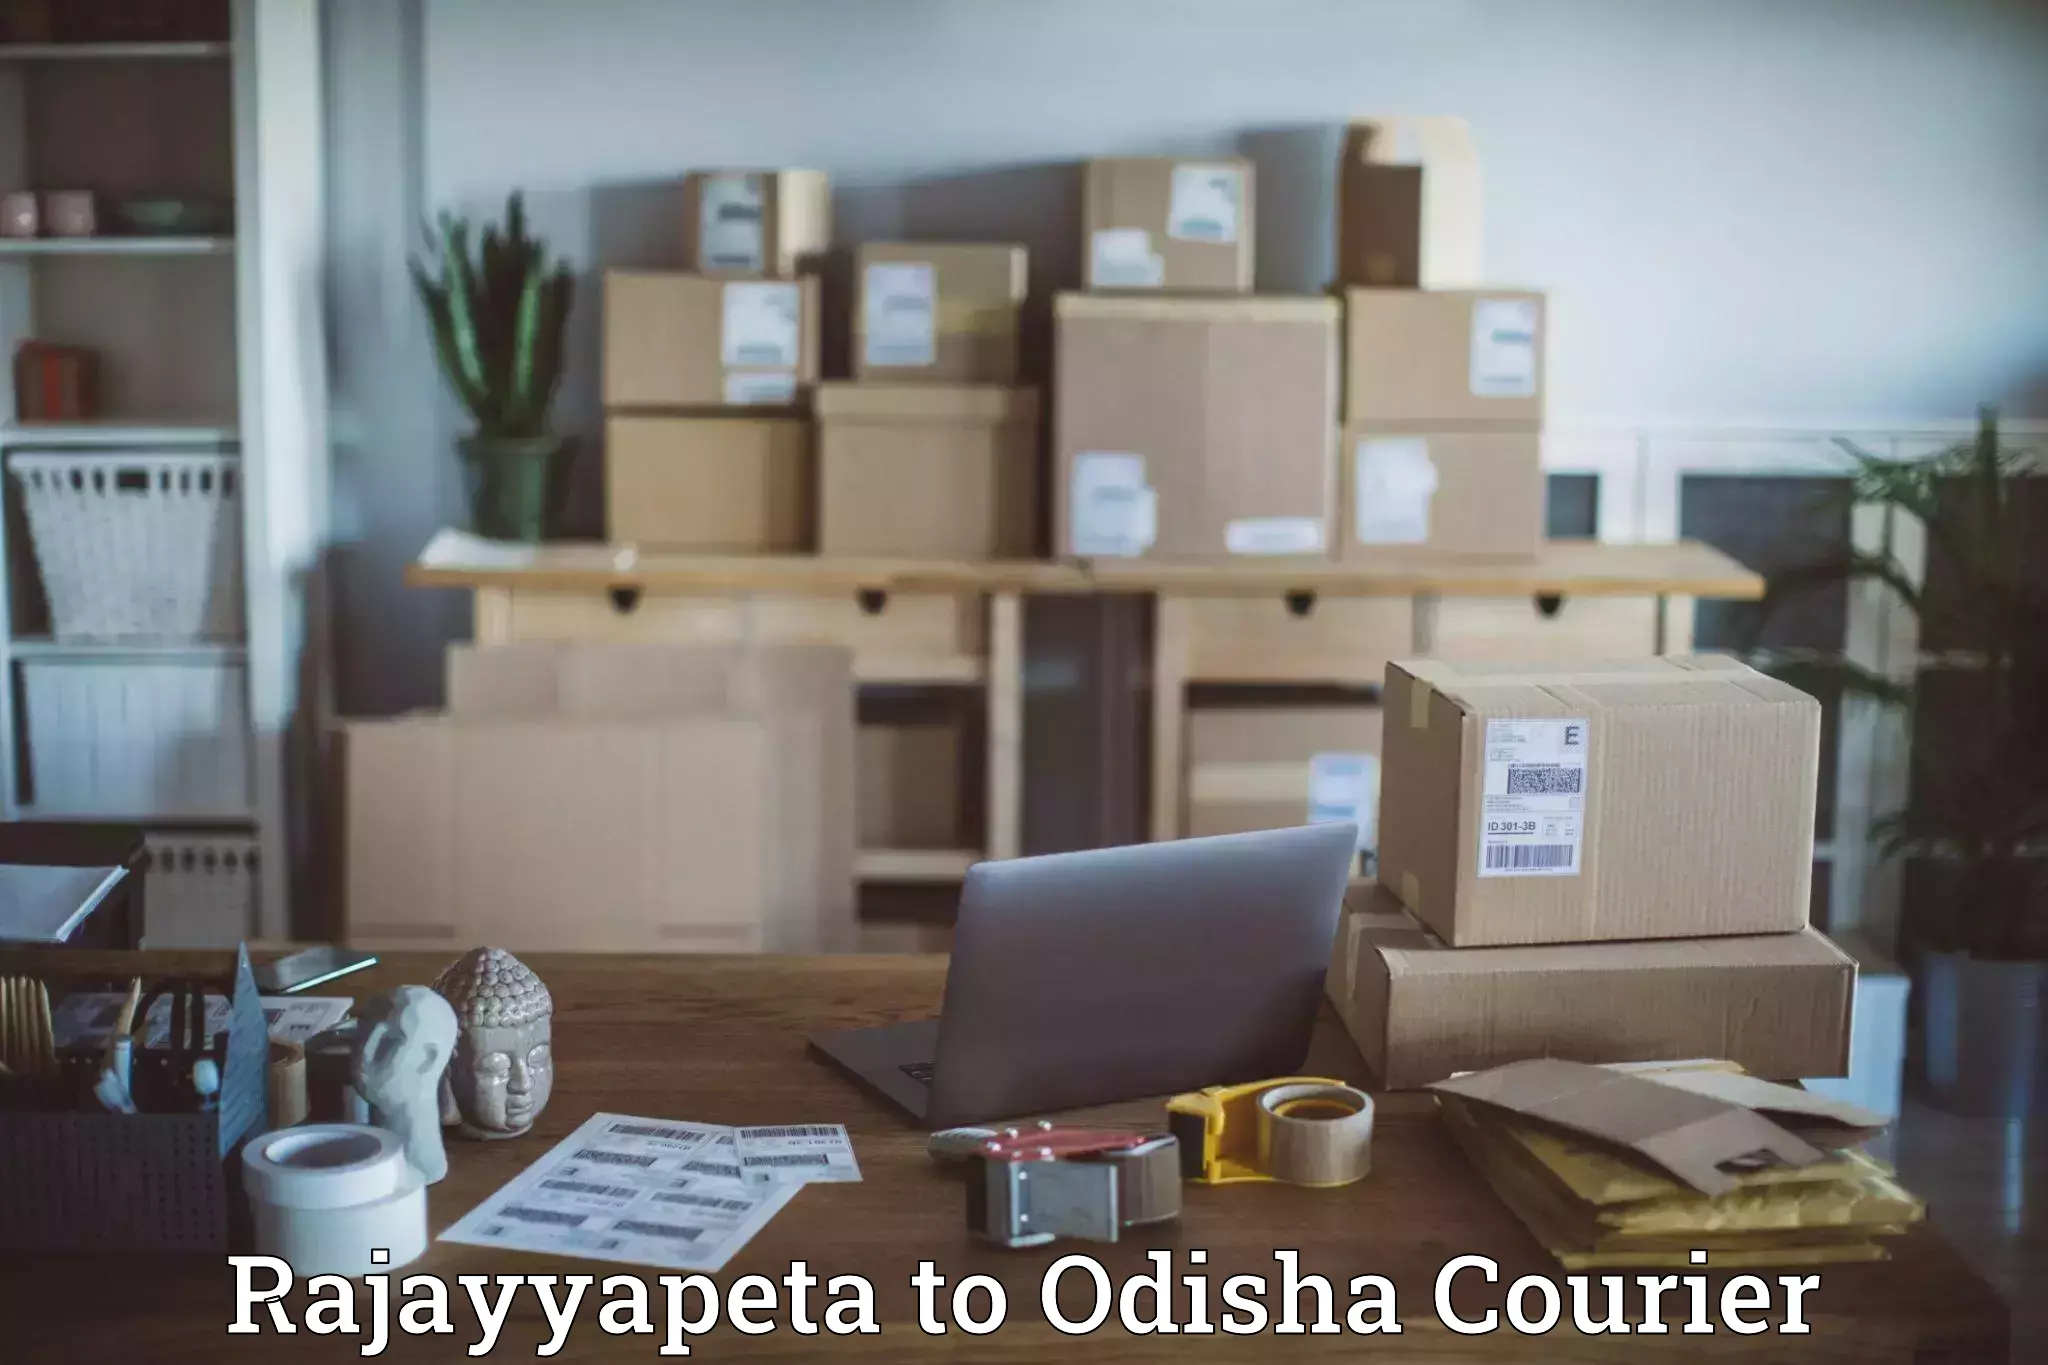 Cash on delivery service Rajayyapeta to Paikana